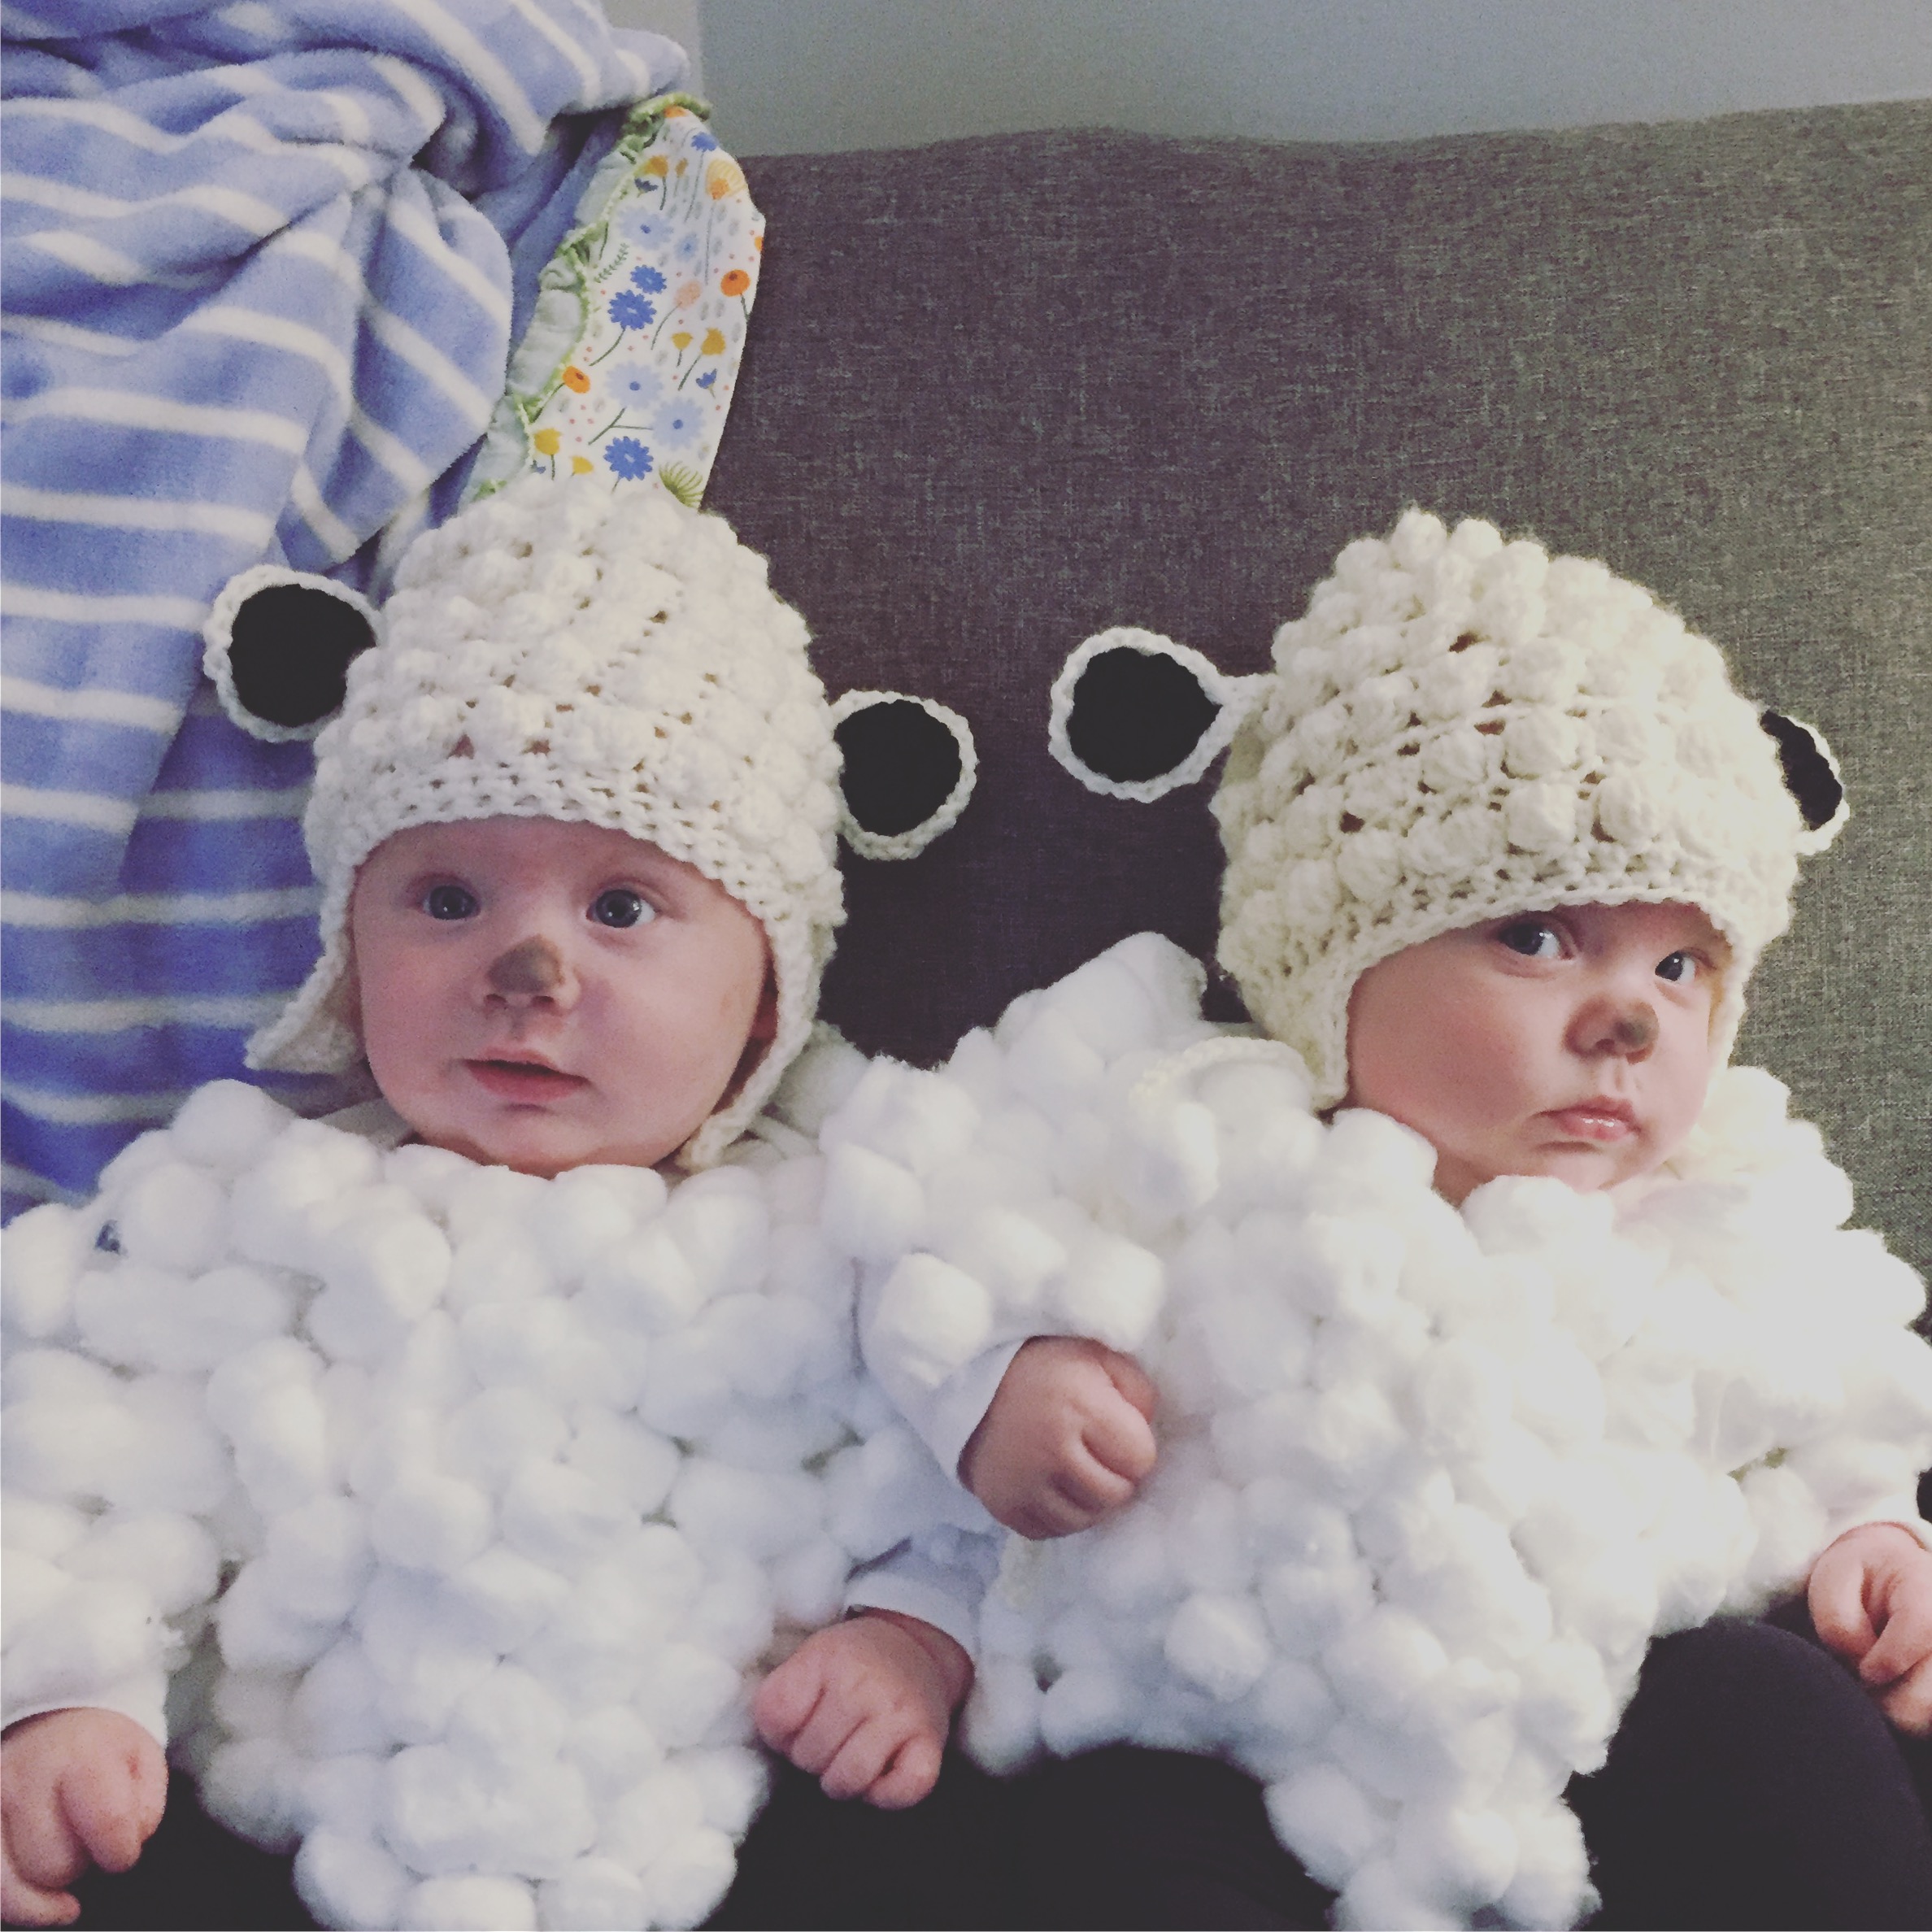 twin babies in halloween costumes